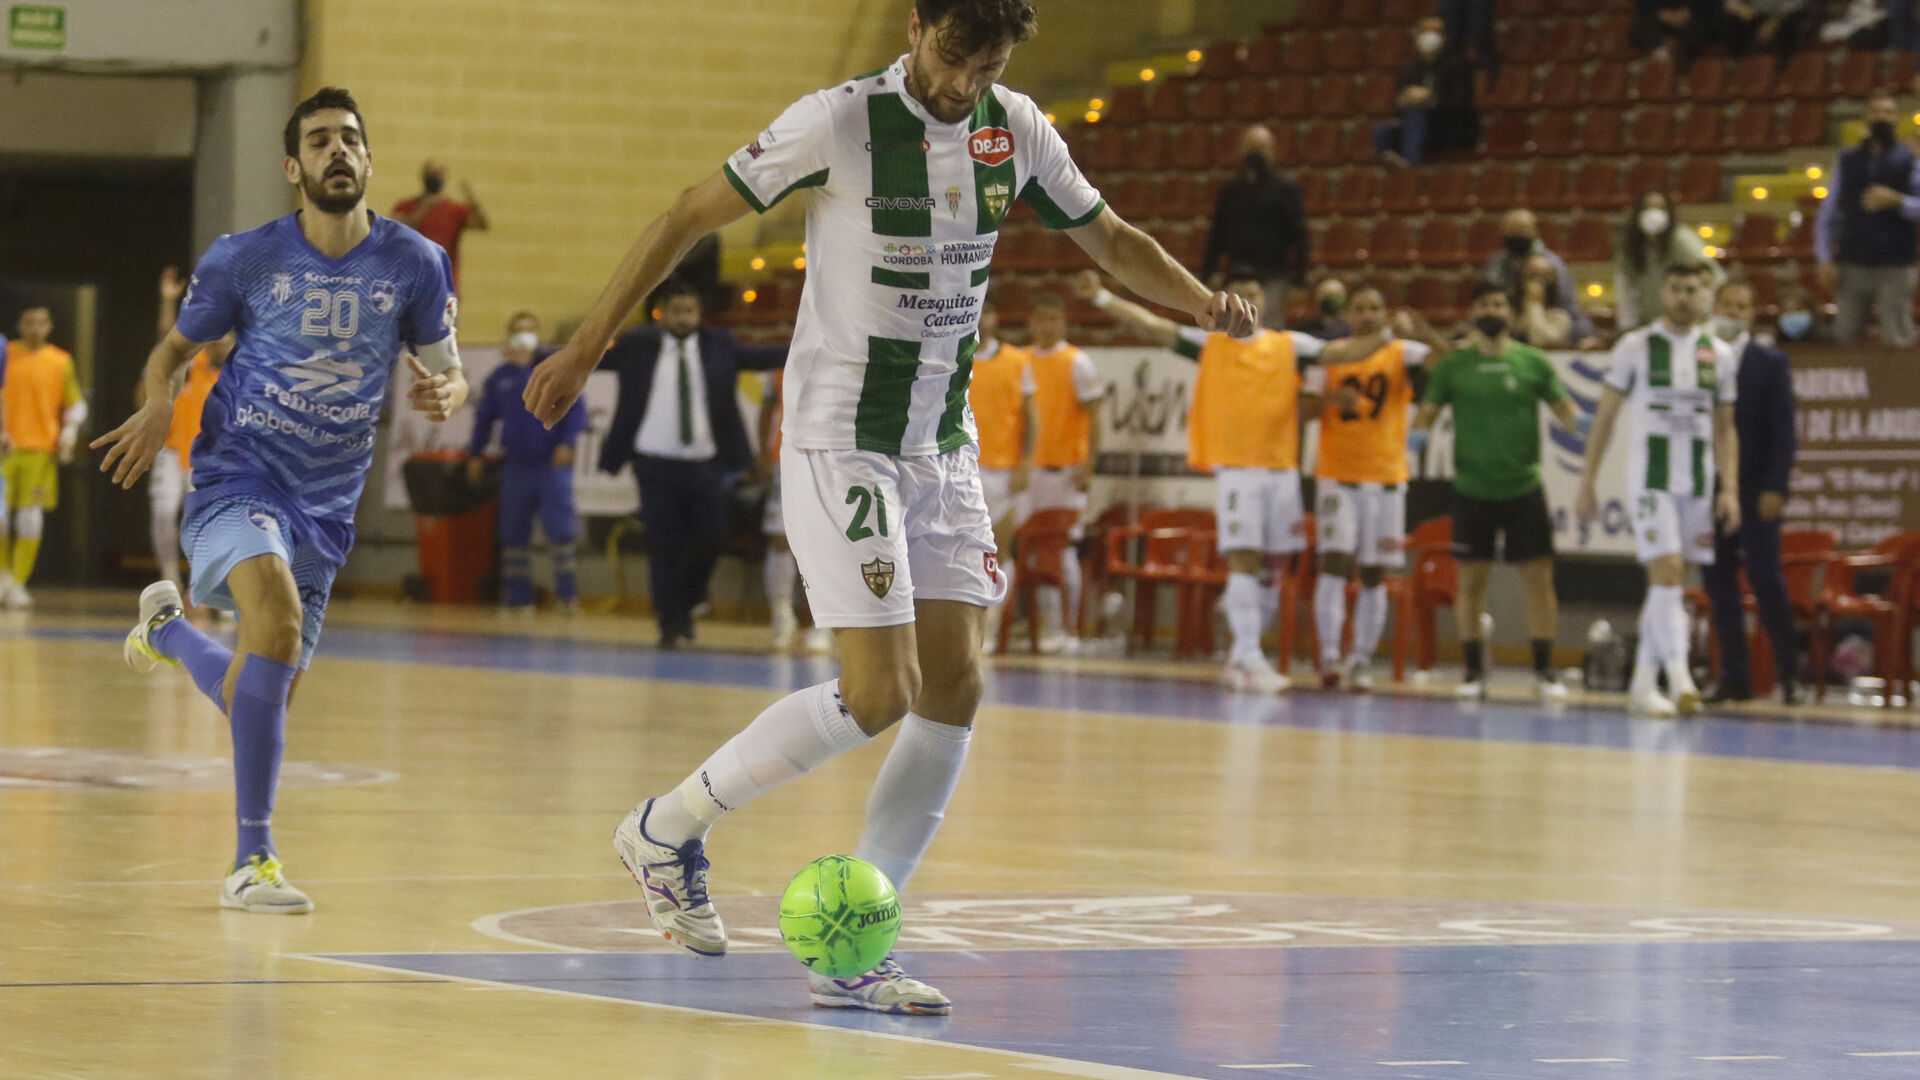 Fotograf&iacute;as: La victoria del C&oacute;rdoba Futsal sobre el Pe&ntilde;&iacute;scola